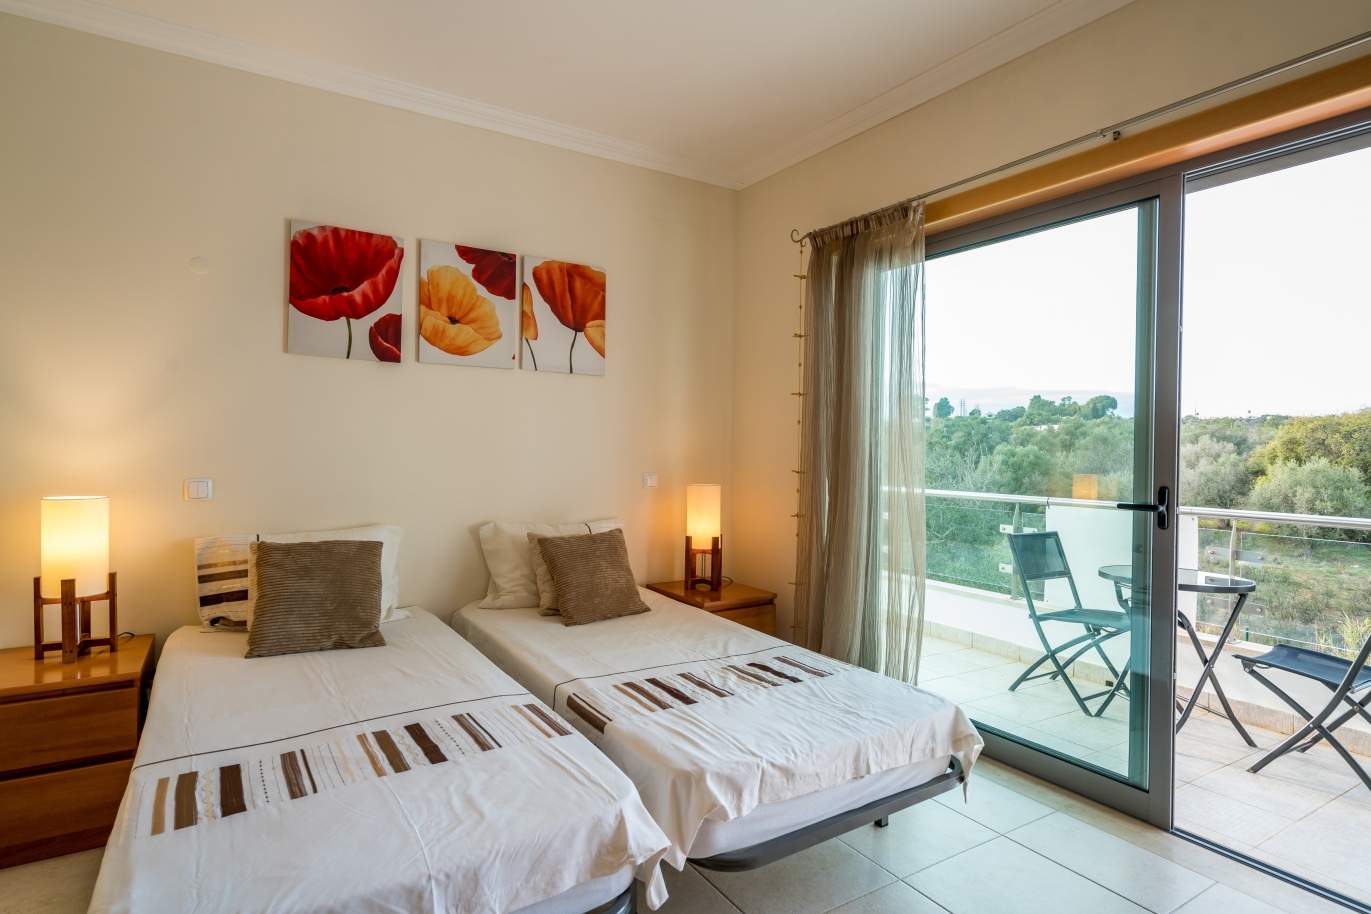 Verkauf villa in einer Eigentumswohnung, Albufeira, Algarve, Portugal_126886